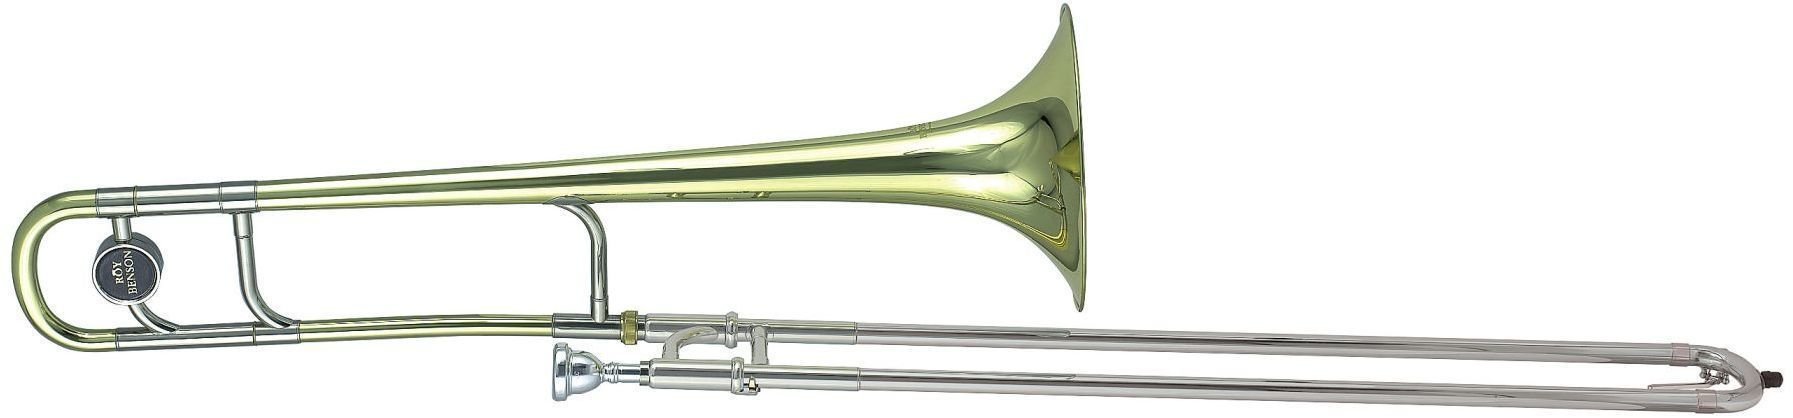 Trombon tenor Roy Benson TT-236 Trombon tenor